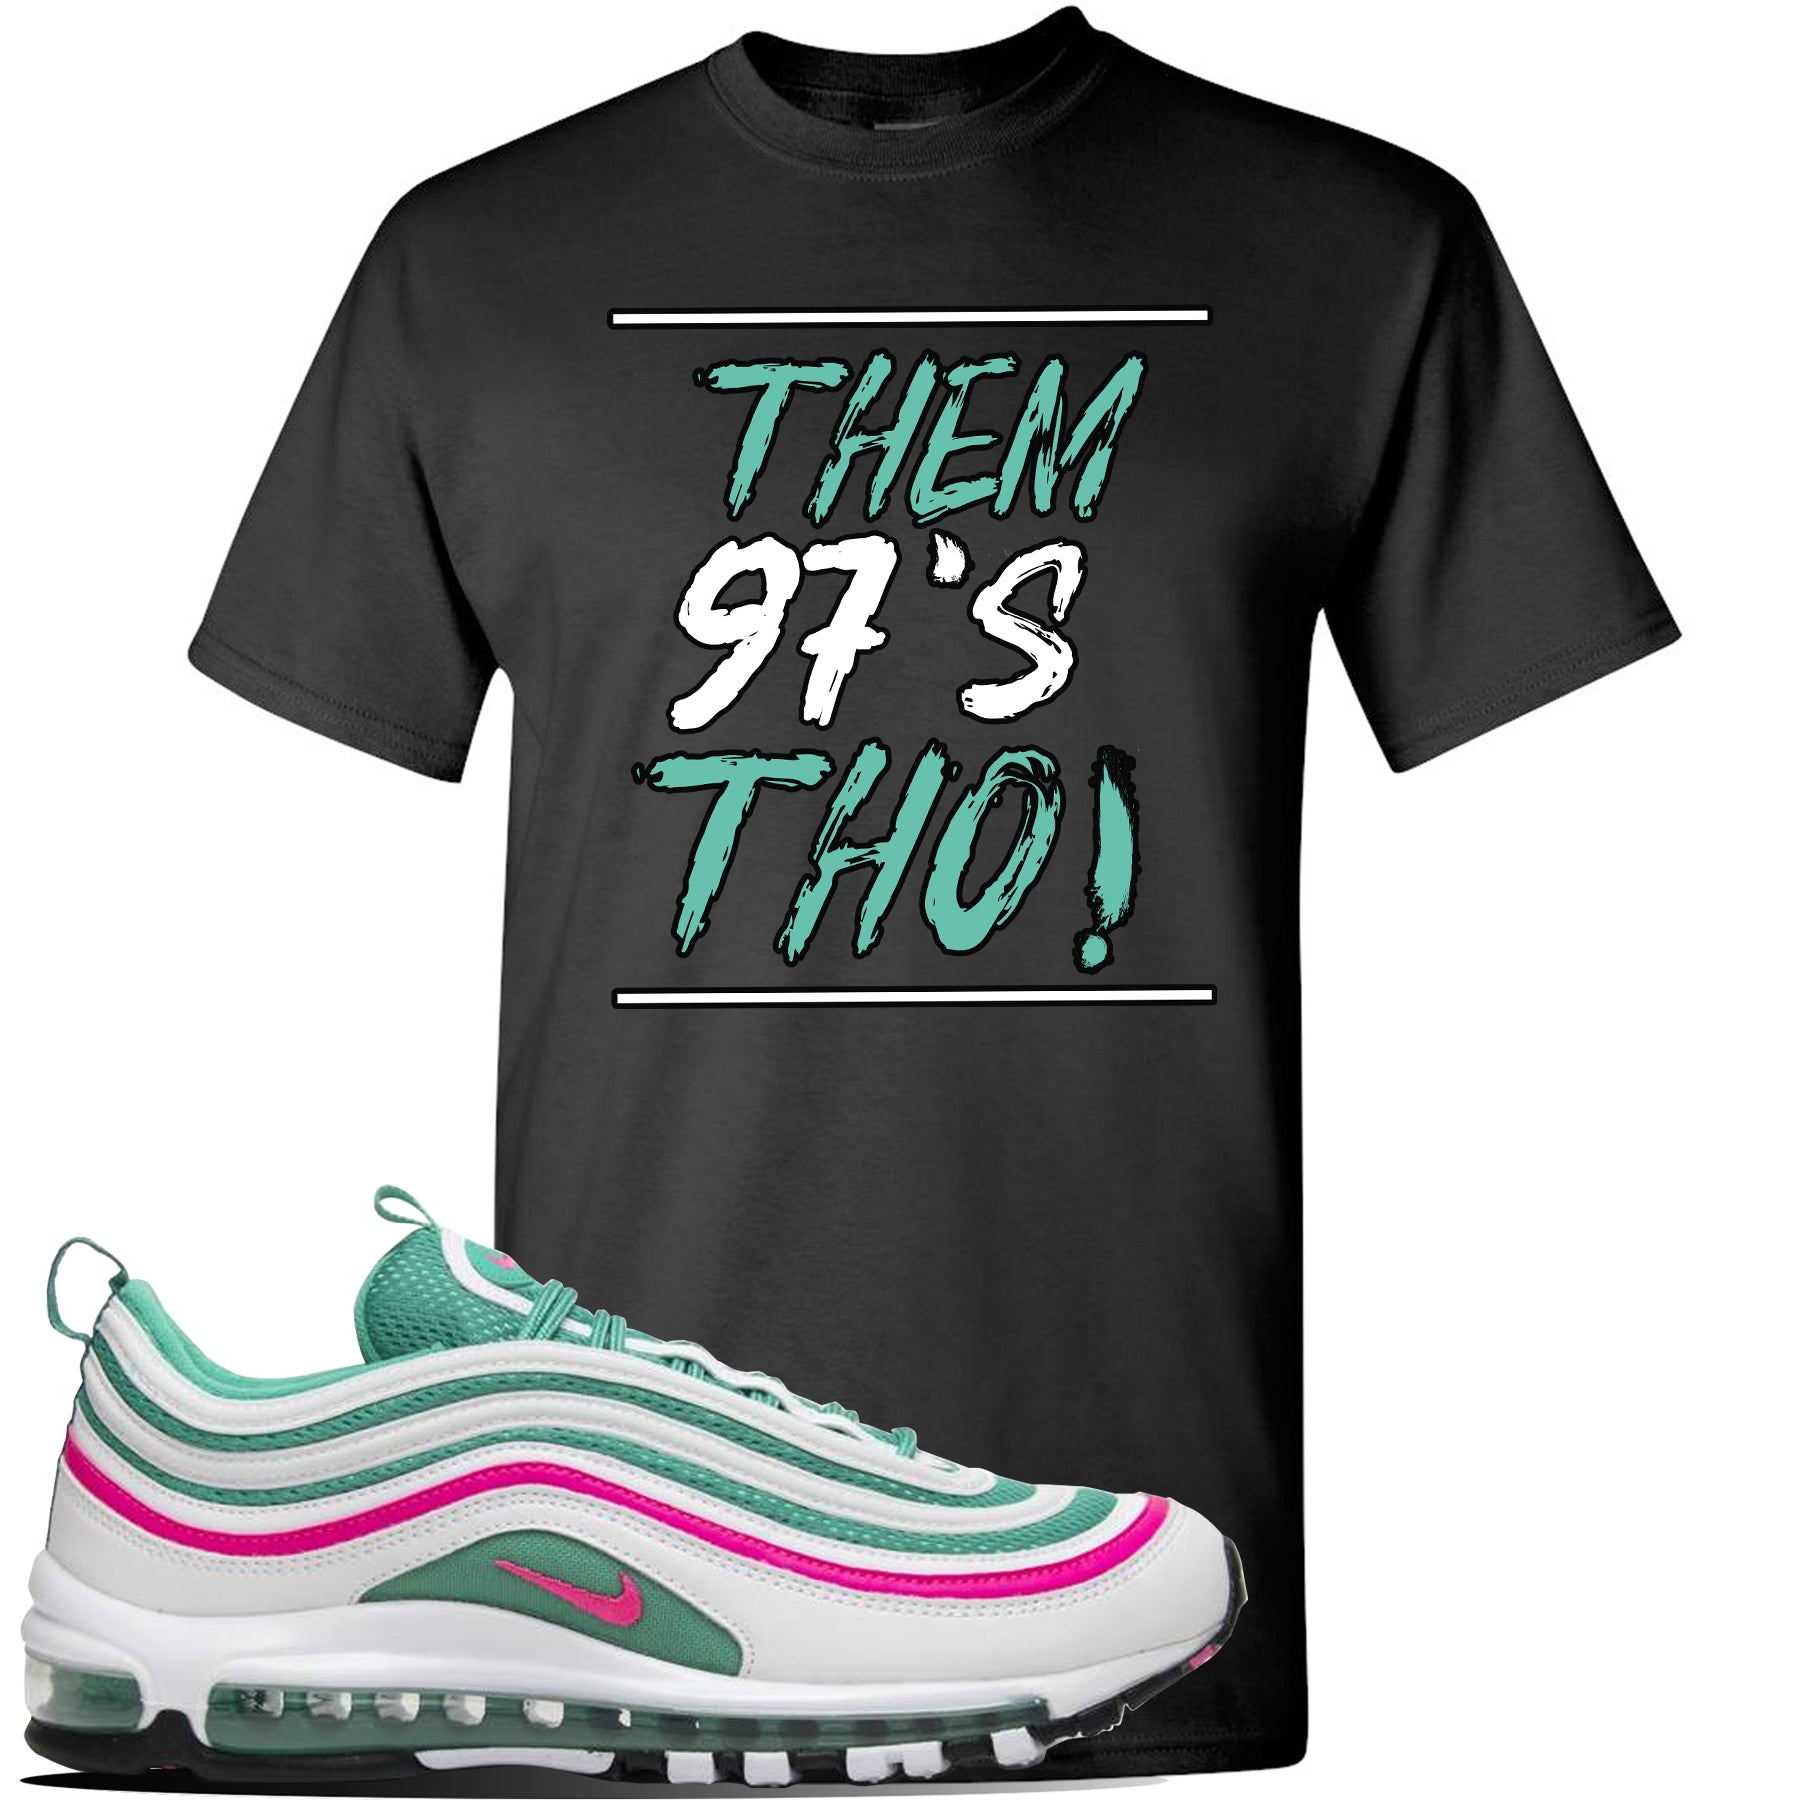 south beach 97 shirt